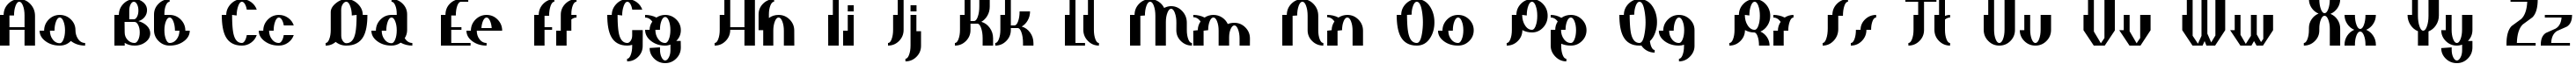 Пример написания английского алфавита шрифтом Elephant man